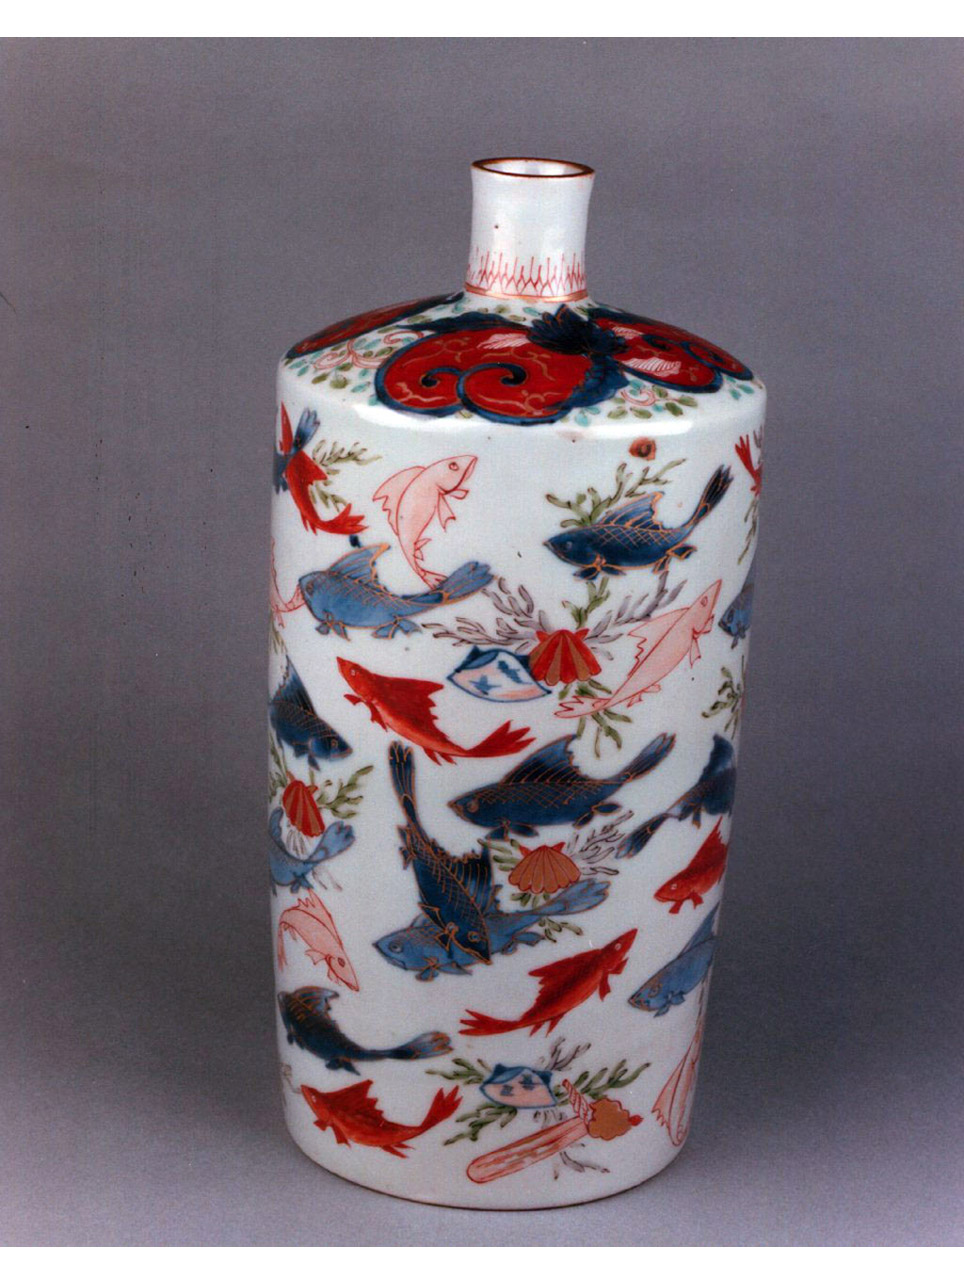 motivi decorativi vegetali e animali (bottiglia) - manifattura giapponese (secc. XVII/ XVIII)